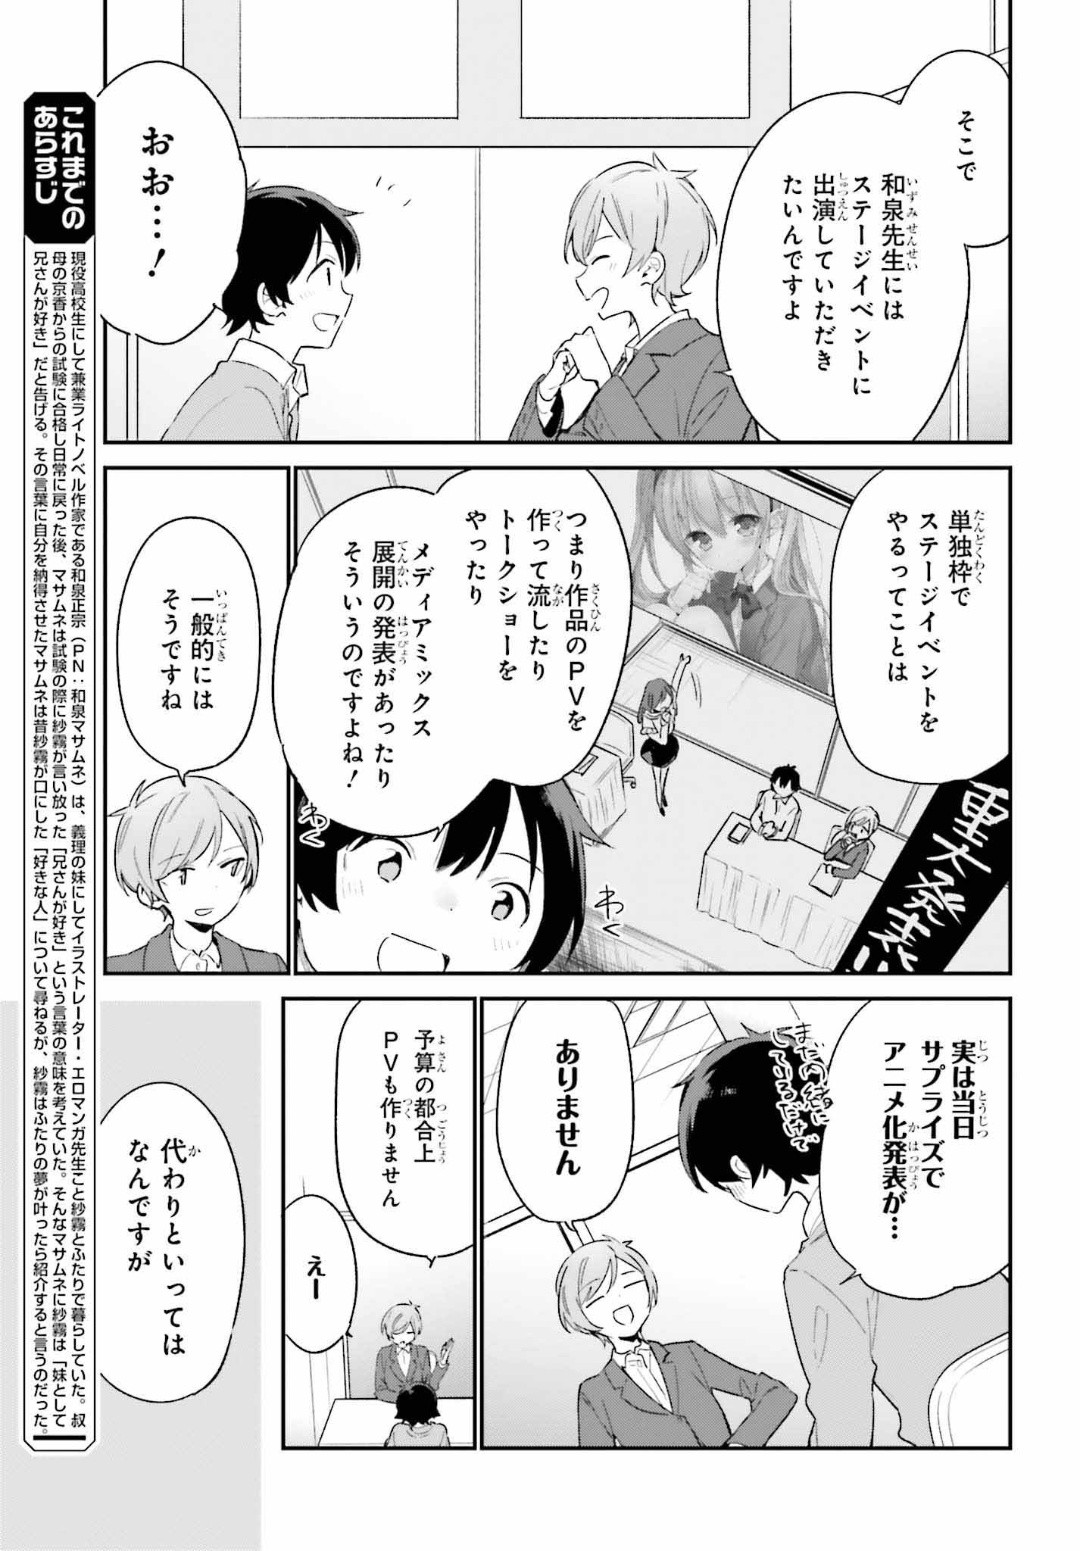 Ero Manga Sensei - Chapter 66 - Page 3